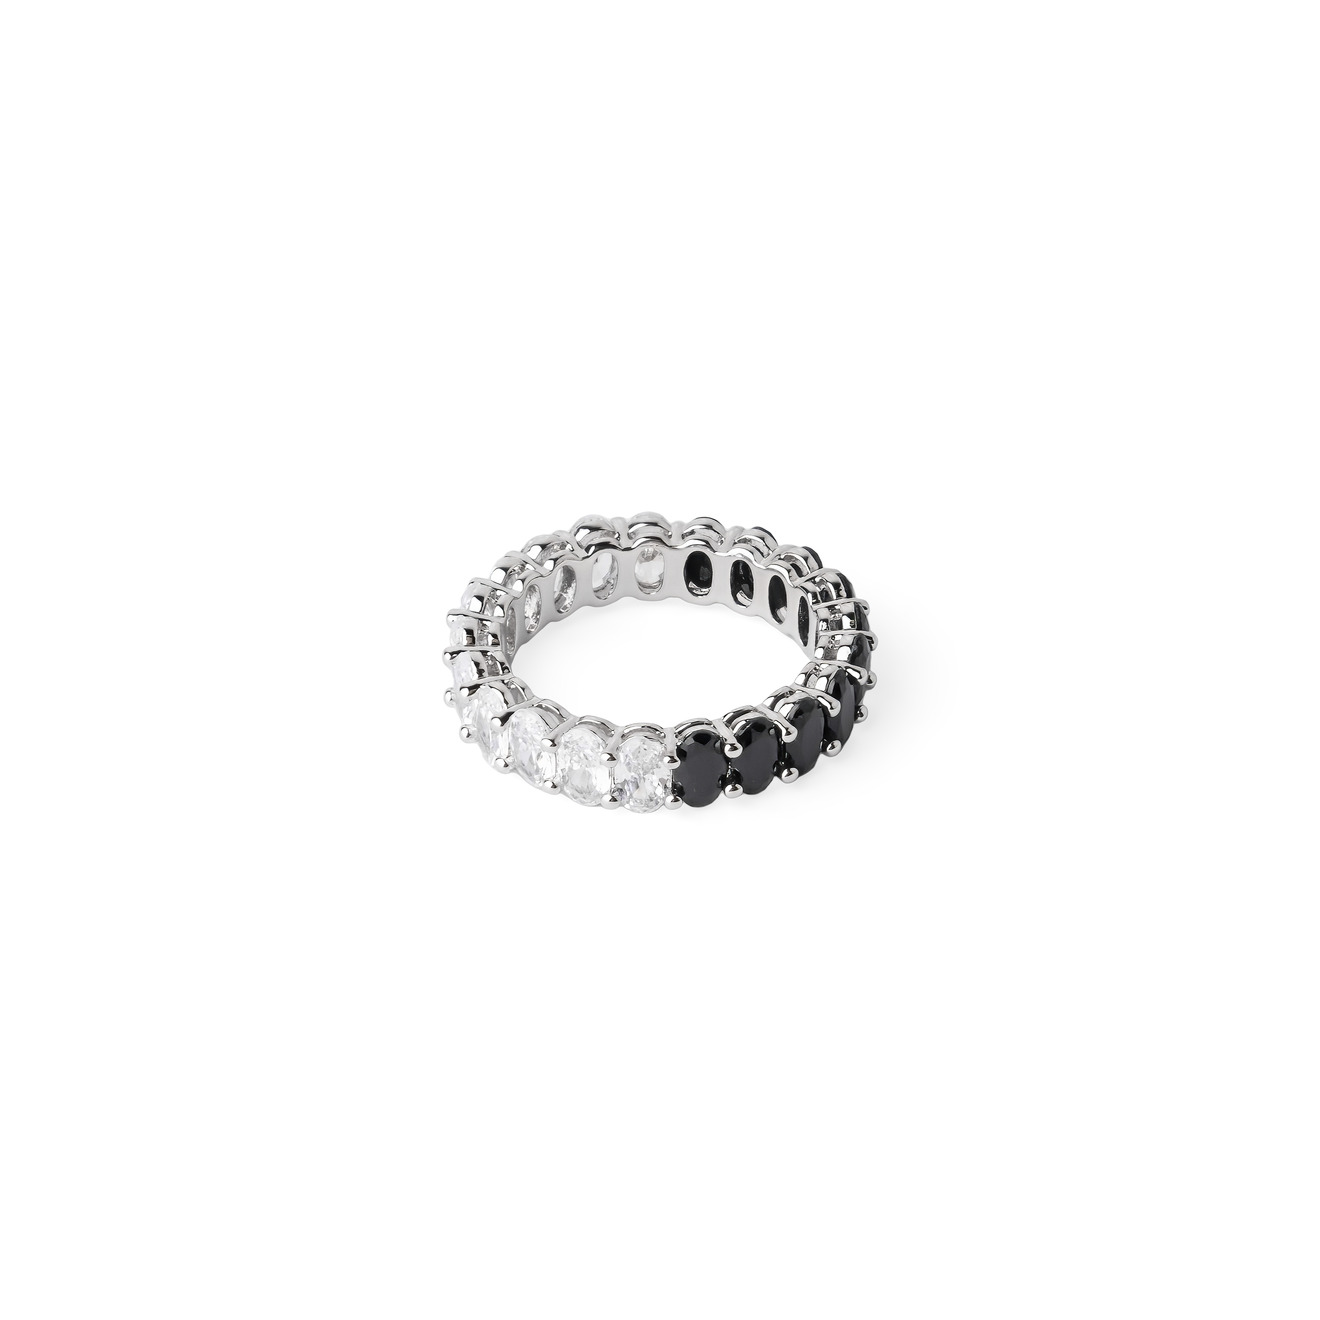 Herald Percy Серебристое кольцо с черными и белыми кристаллами herald percy серебристое кольцо из сердец с белыми и розовыми кристаллами